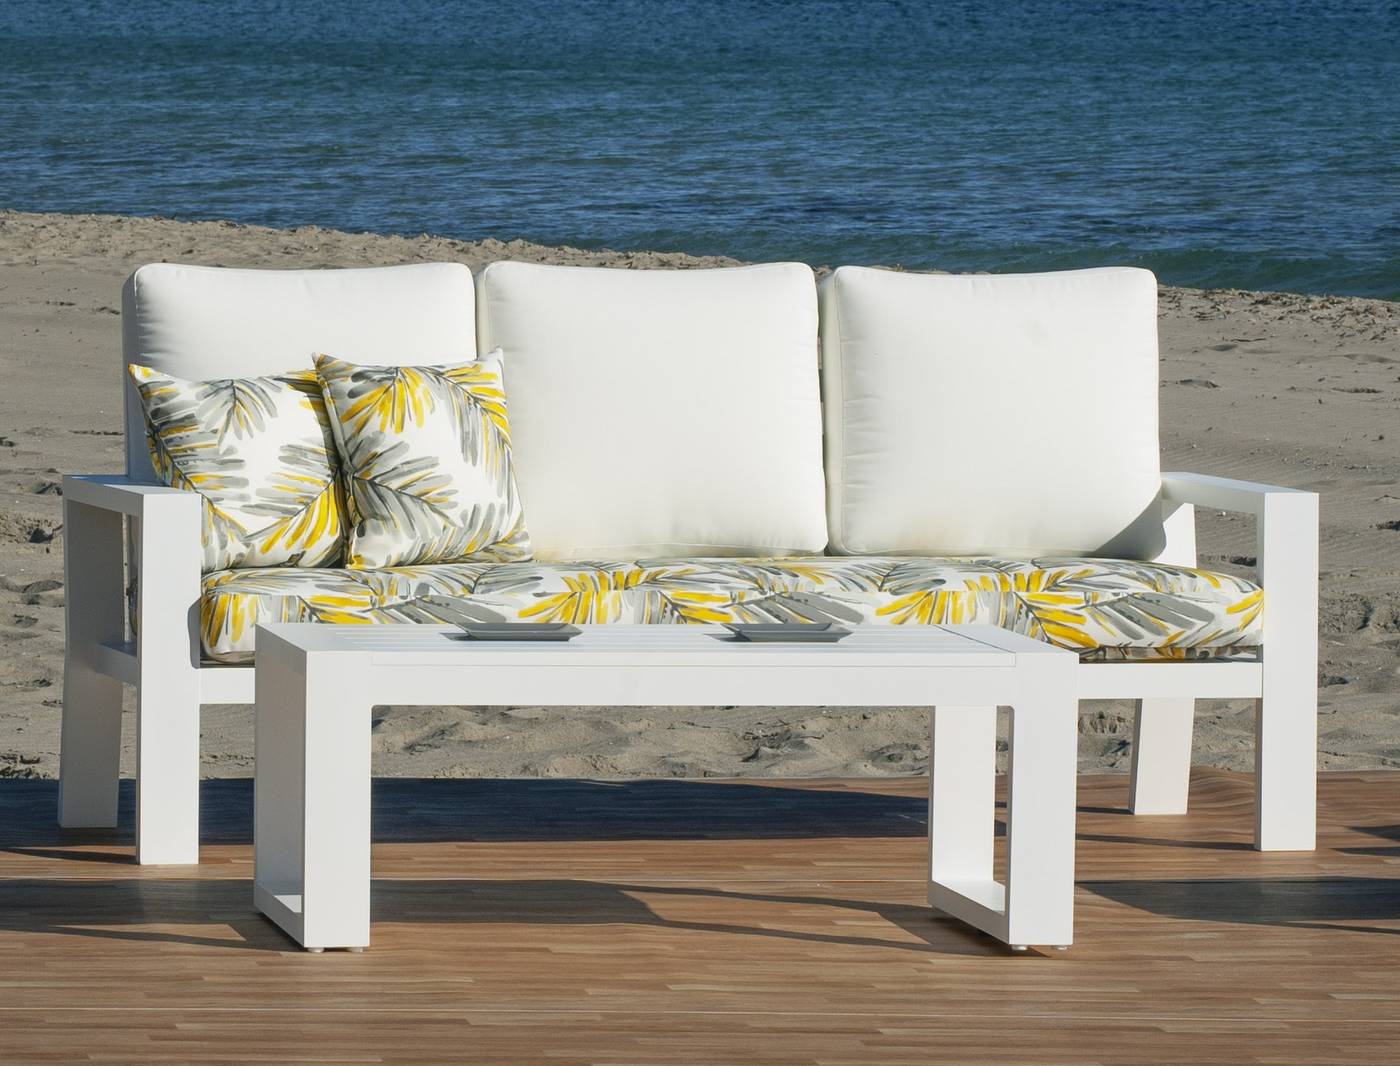 Set Aluminio Luxe Kingston-8 - Conjunto lujoso de aluminio: 1 sofá de 3 plazas + 2 sillones + 1 mesa de centro.